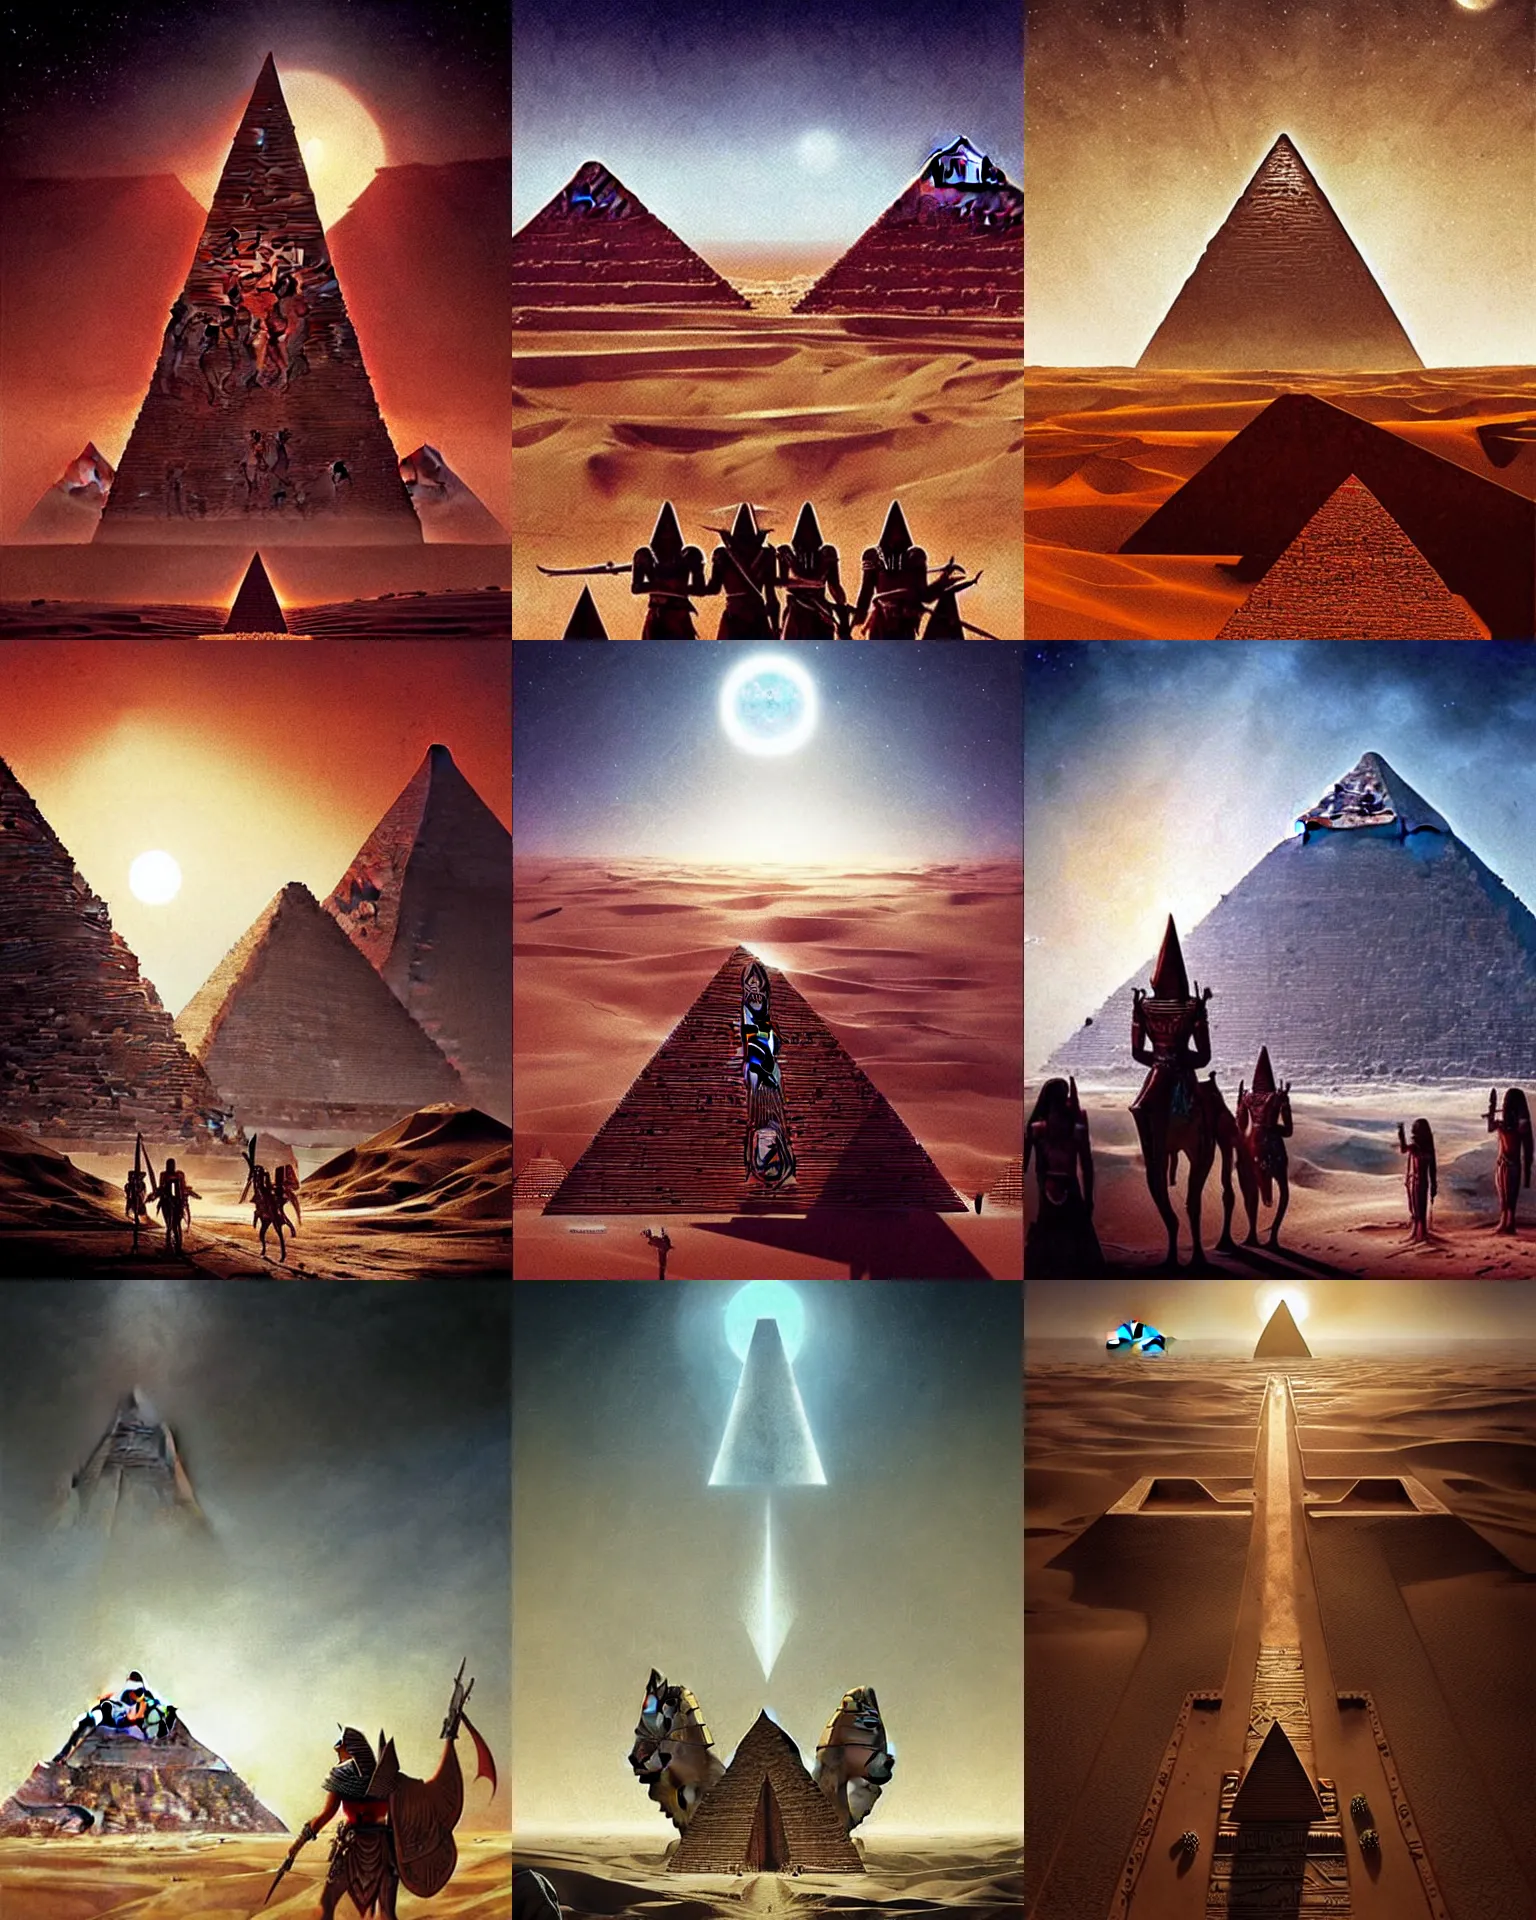 Prompt: egypt piramids on horizon, fantasy dnd art, evil fluid, desert, by greg rutkowski, in style of movie stargate 1 9 9 4